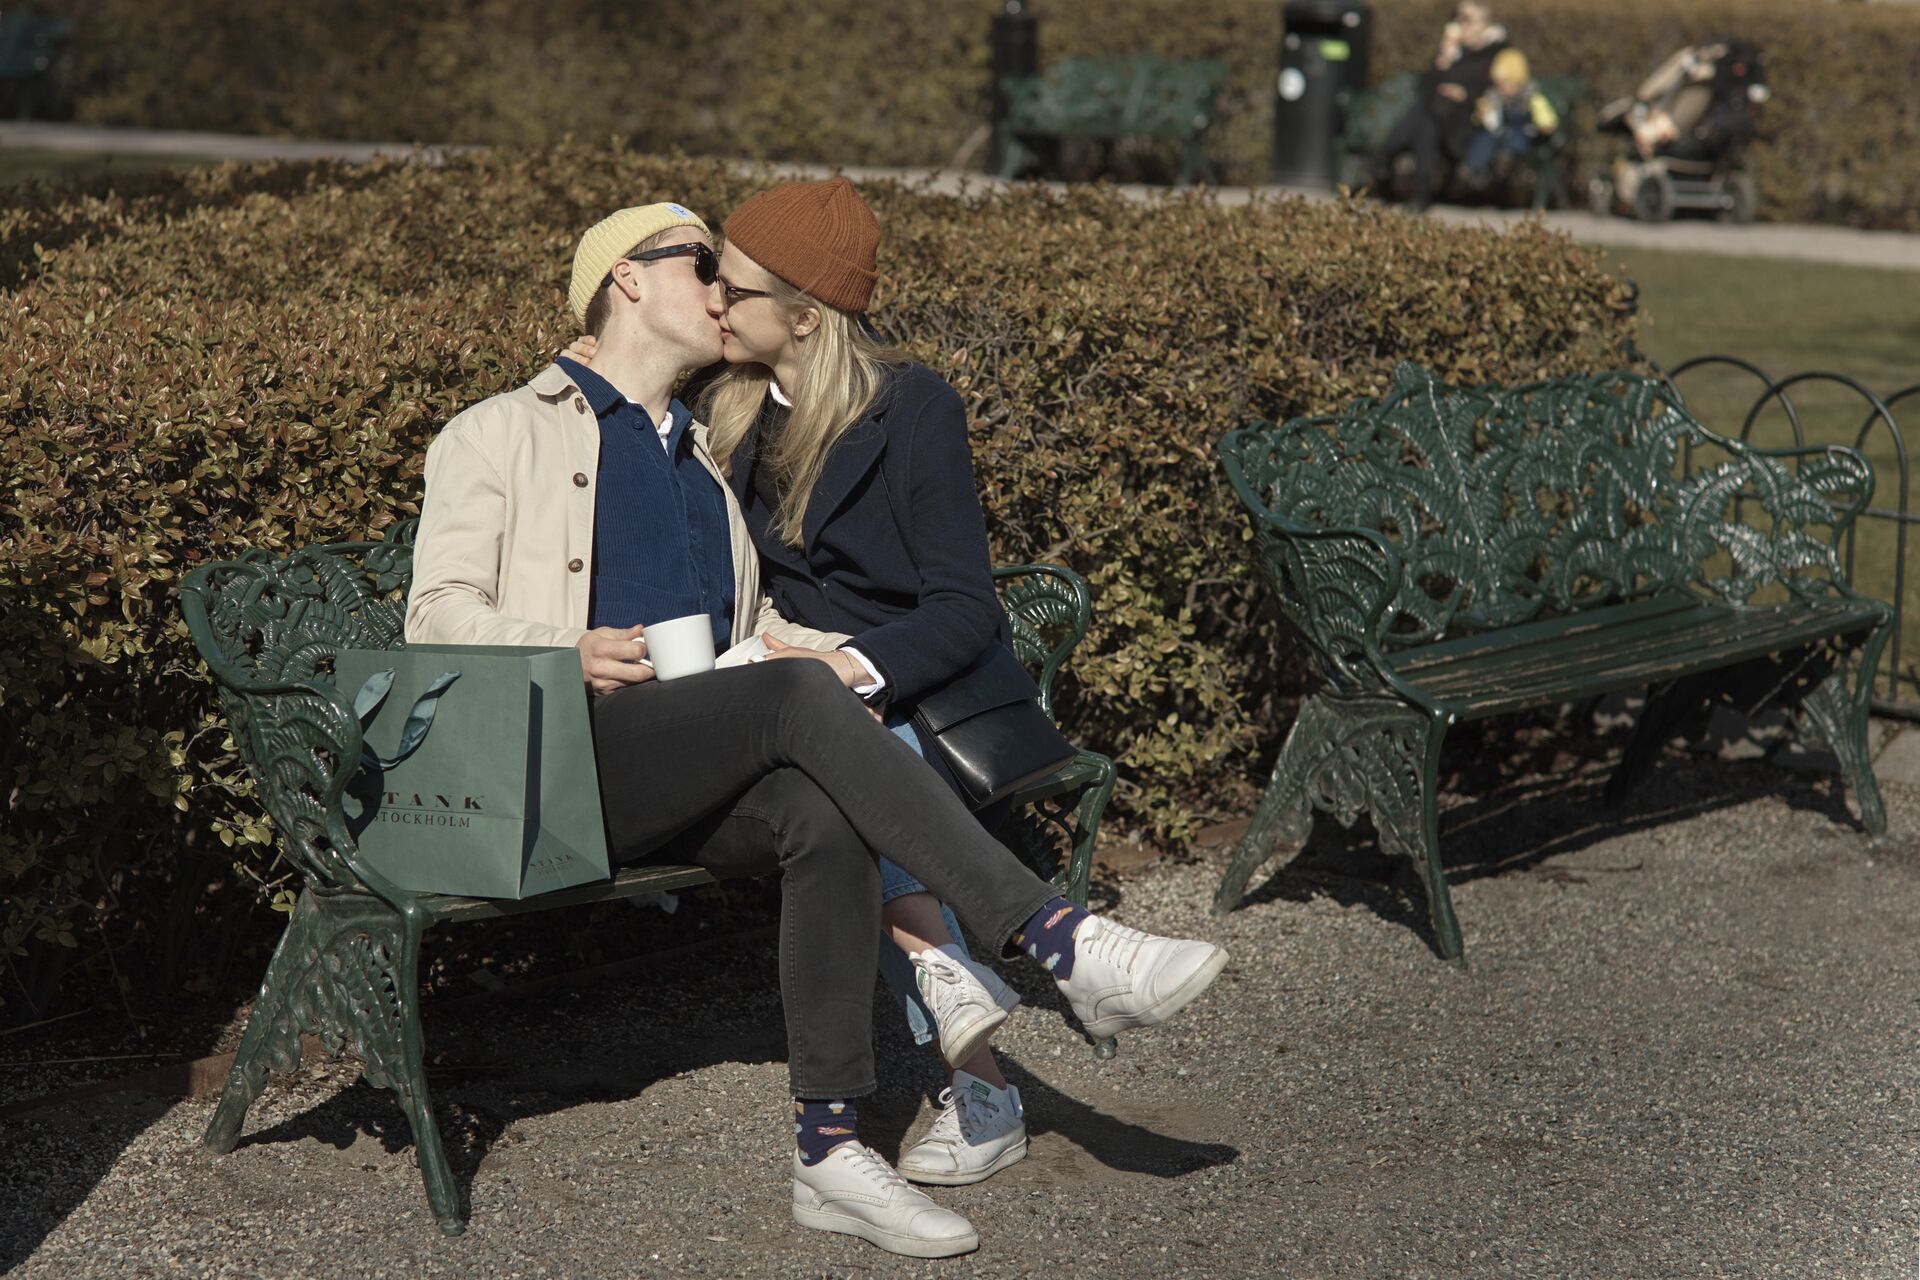 Парочка целуется в парке во время пандемии коронавируса, Стокгольм, Швеция - ИноСМИ, 1920, 01.09.2020